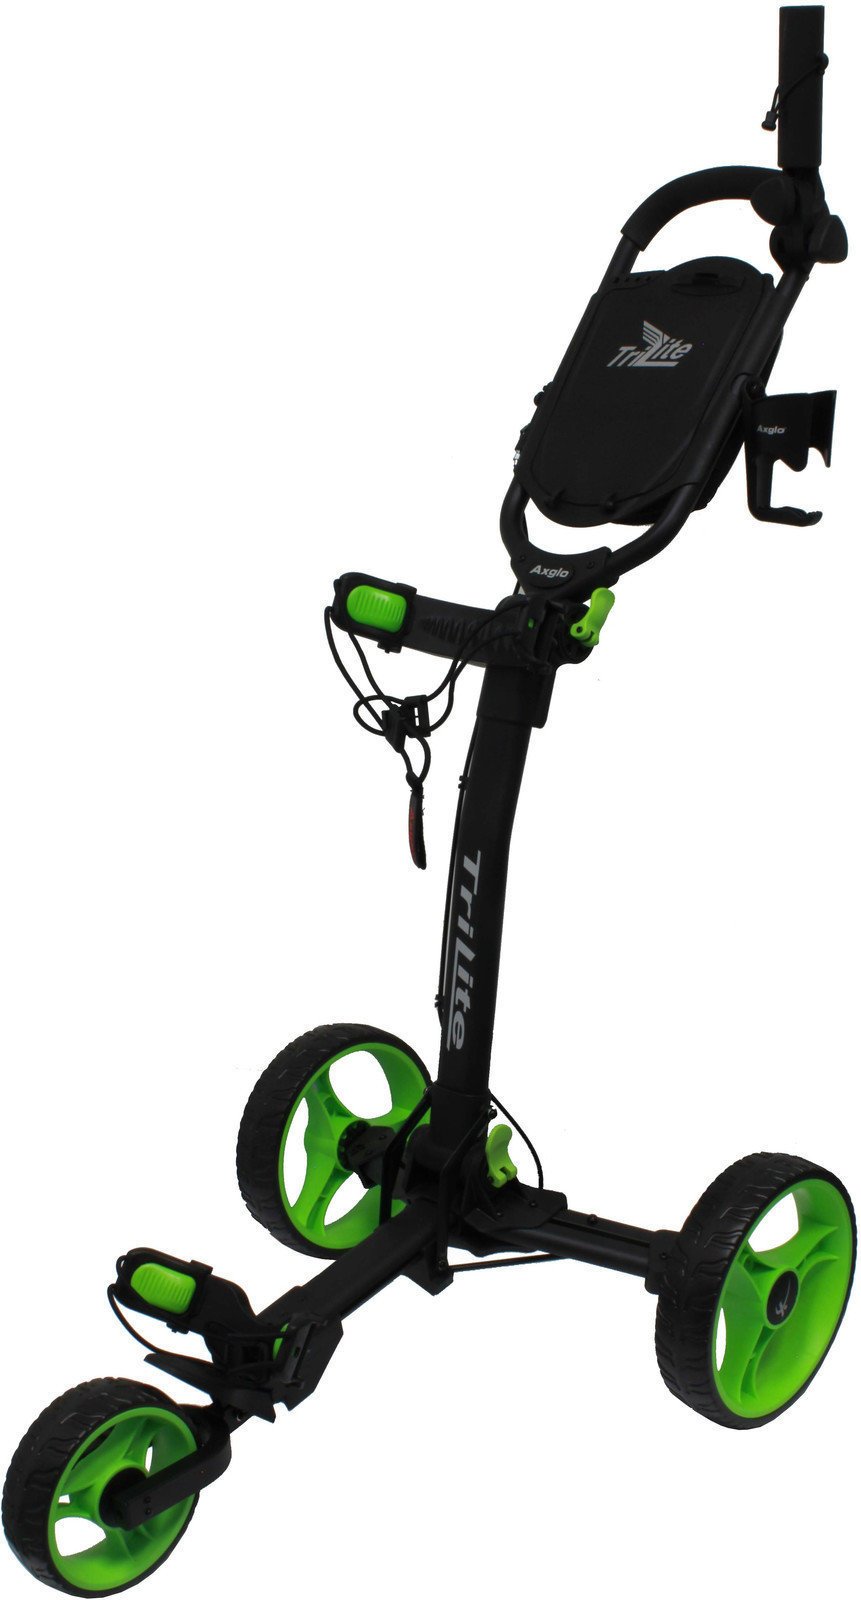 Manuální golfové vozíky Axglo TriLite Black/Green Manuální golfové vozíky